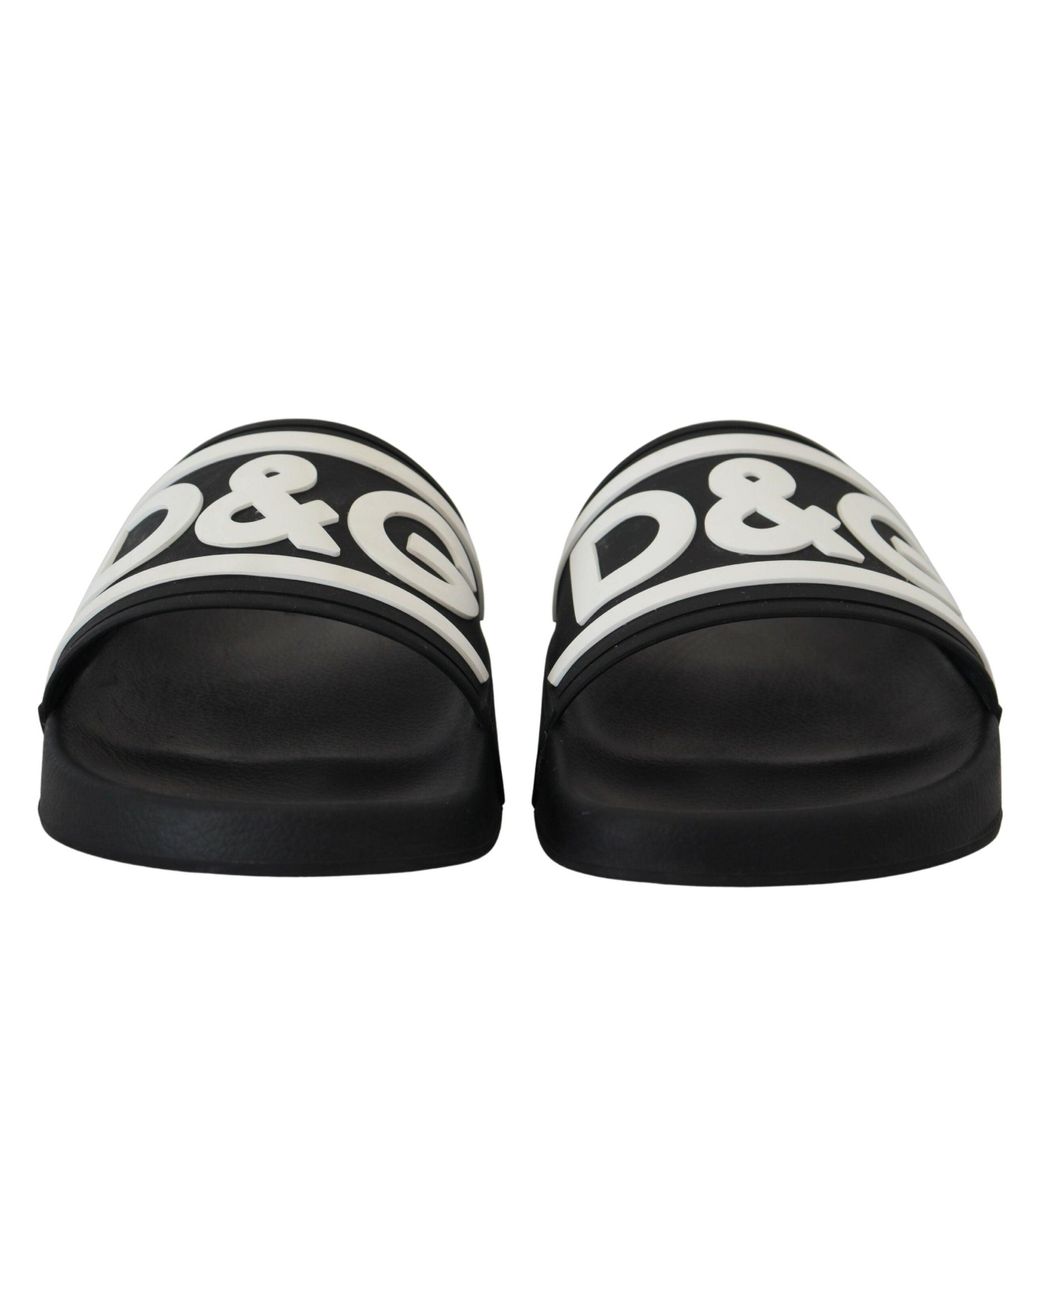 Dolce & Gabbana Black Rubber D&g Logo Shoes Slides Sandals for Men | Lyst